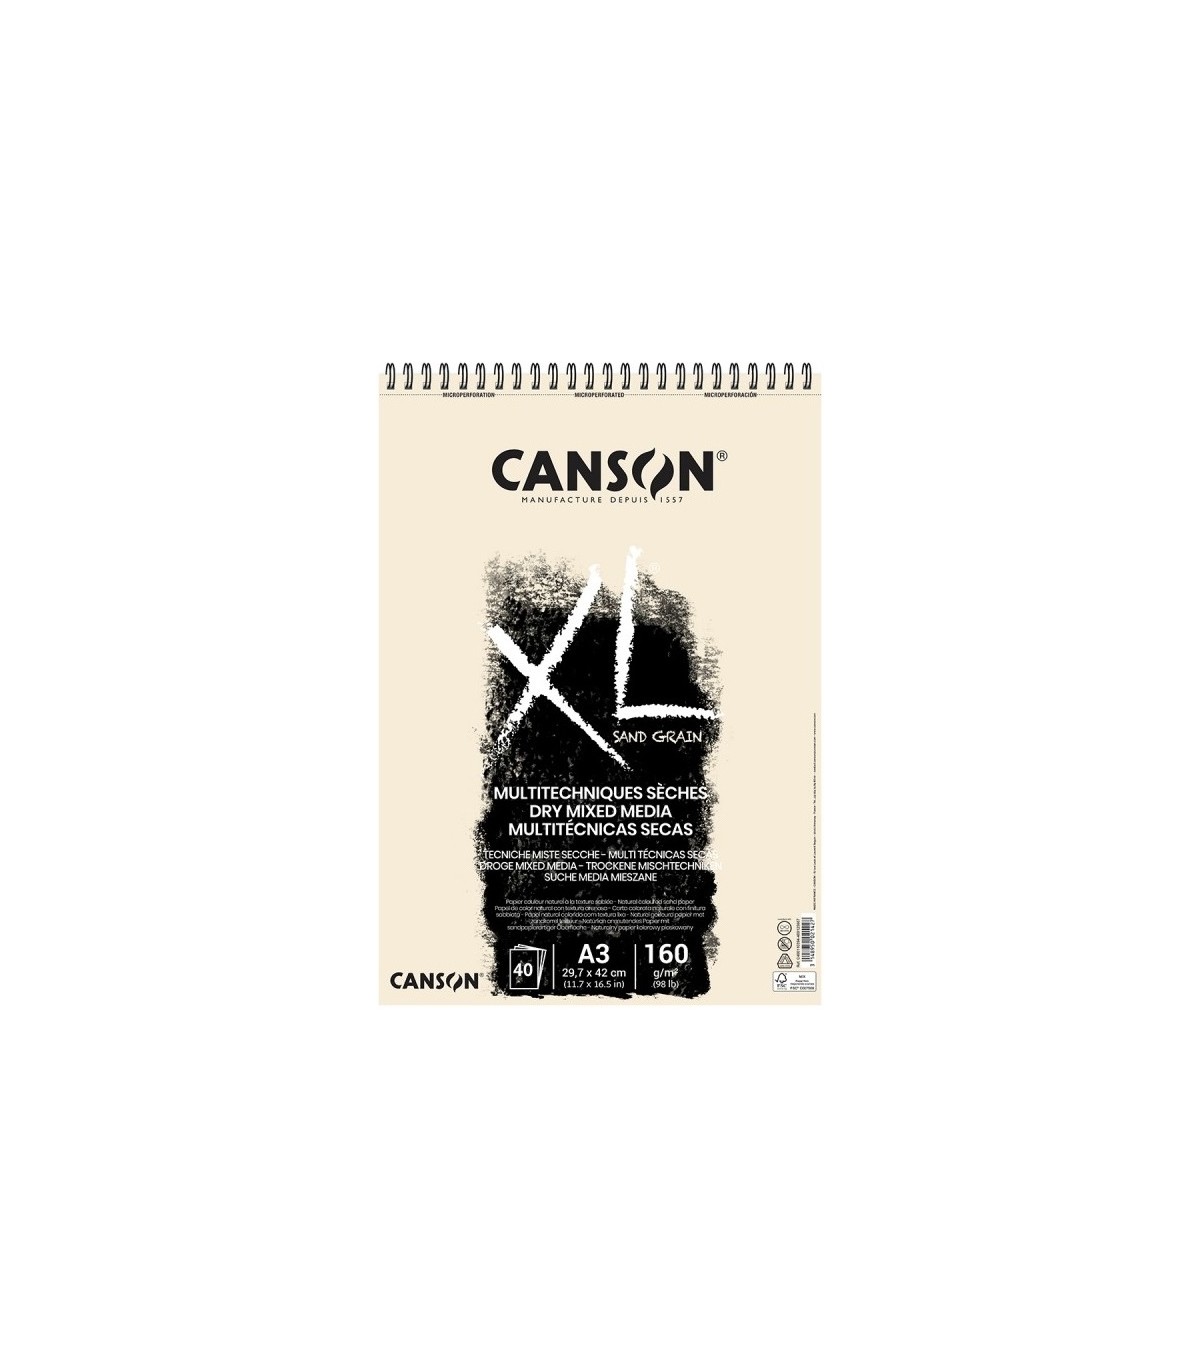 Album Canson XL Sand Grain Multitecnicas secas 40h 160g A3 29.7X42 cm.